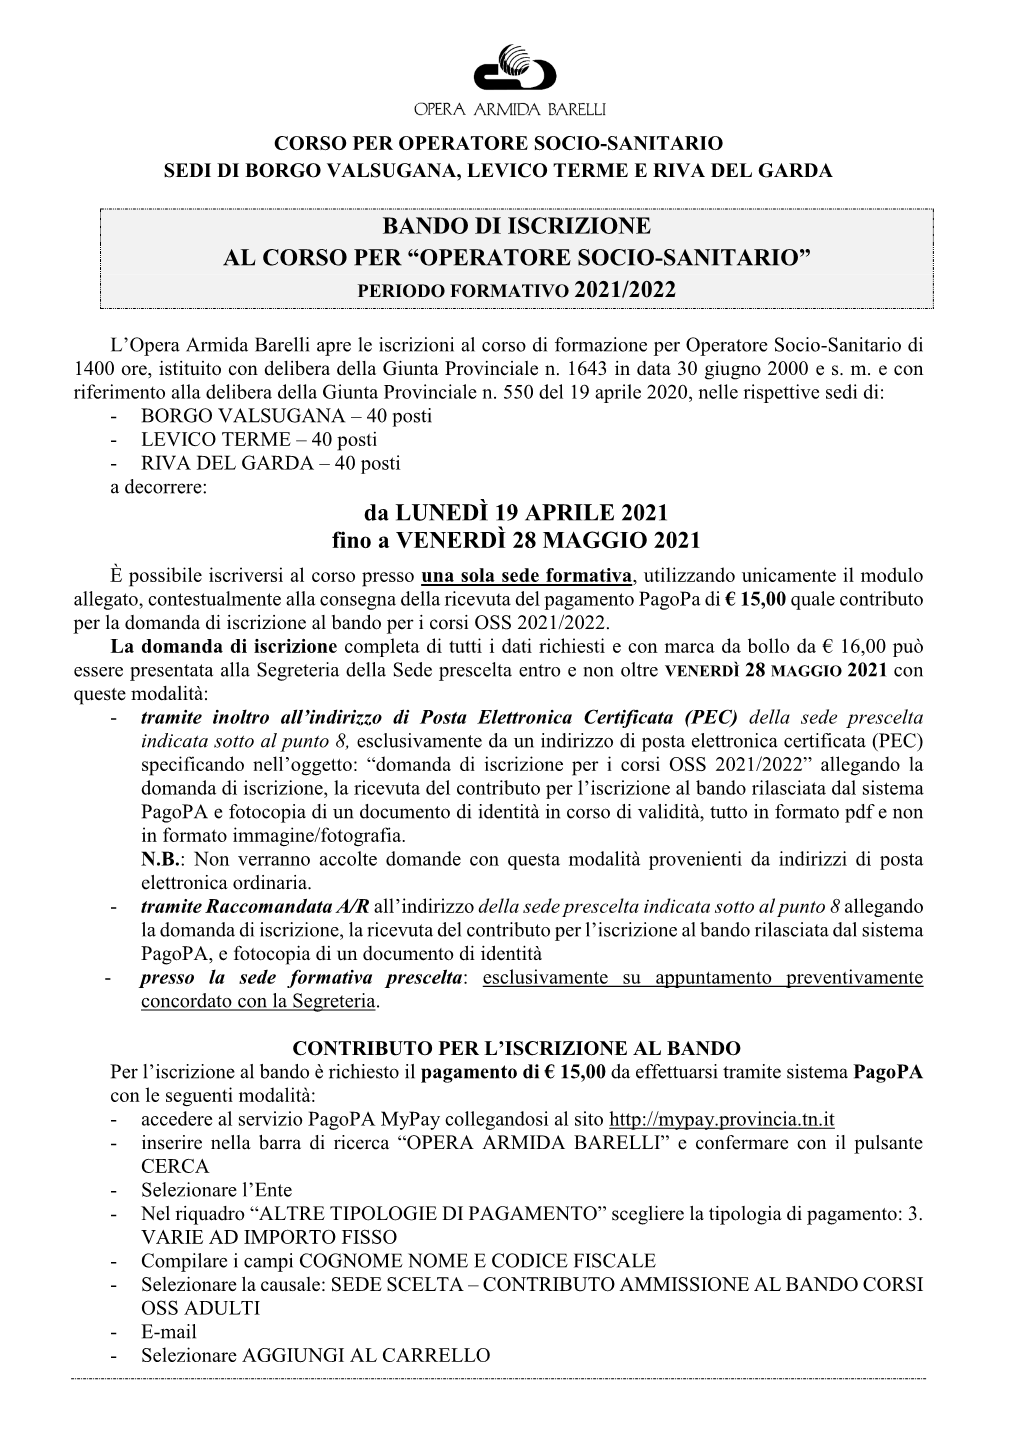 Bando Di Iscrizione Al Corso Per “Operatore Socio-Sanitario” Periodo Formativo 2021/2022